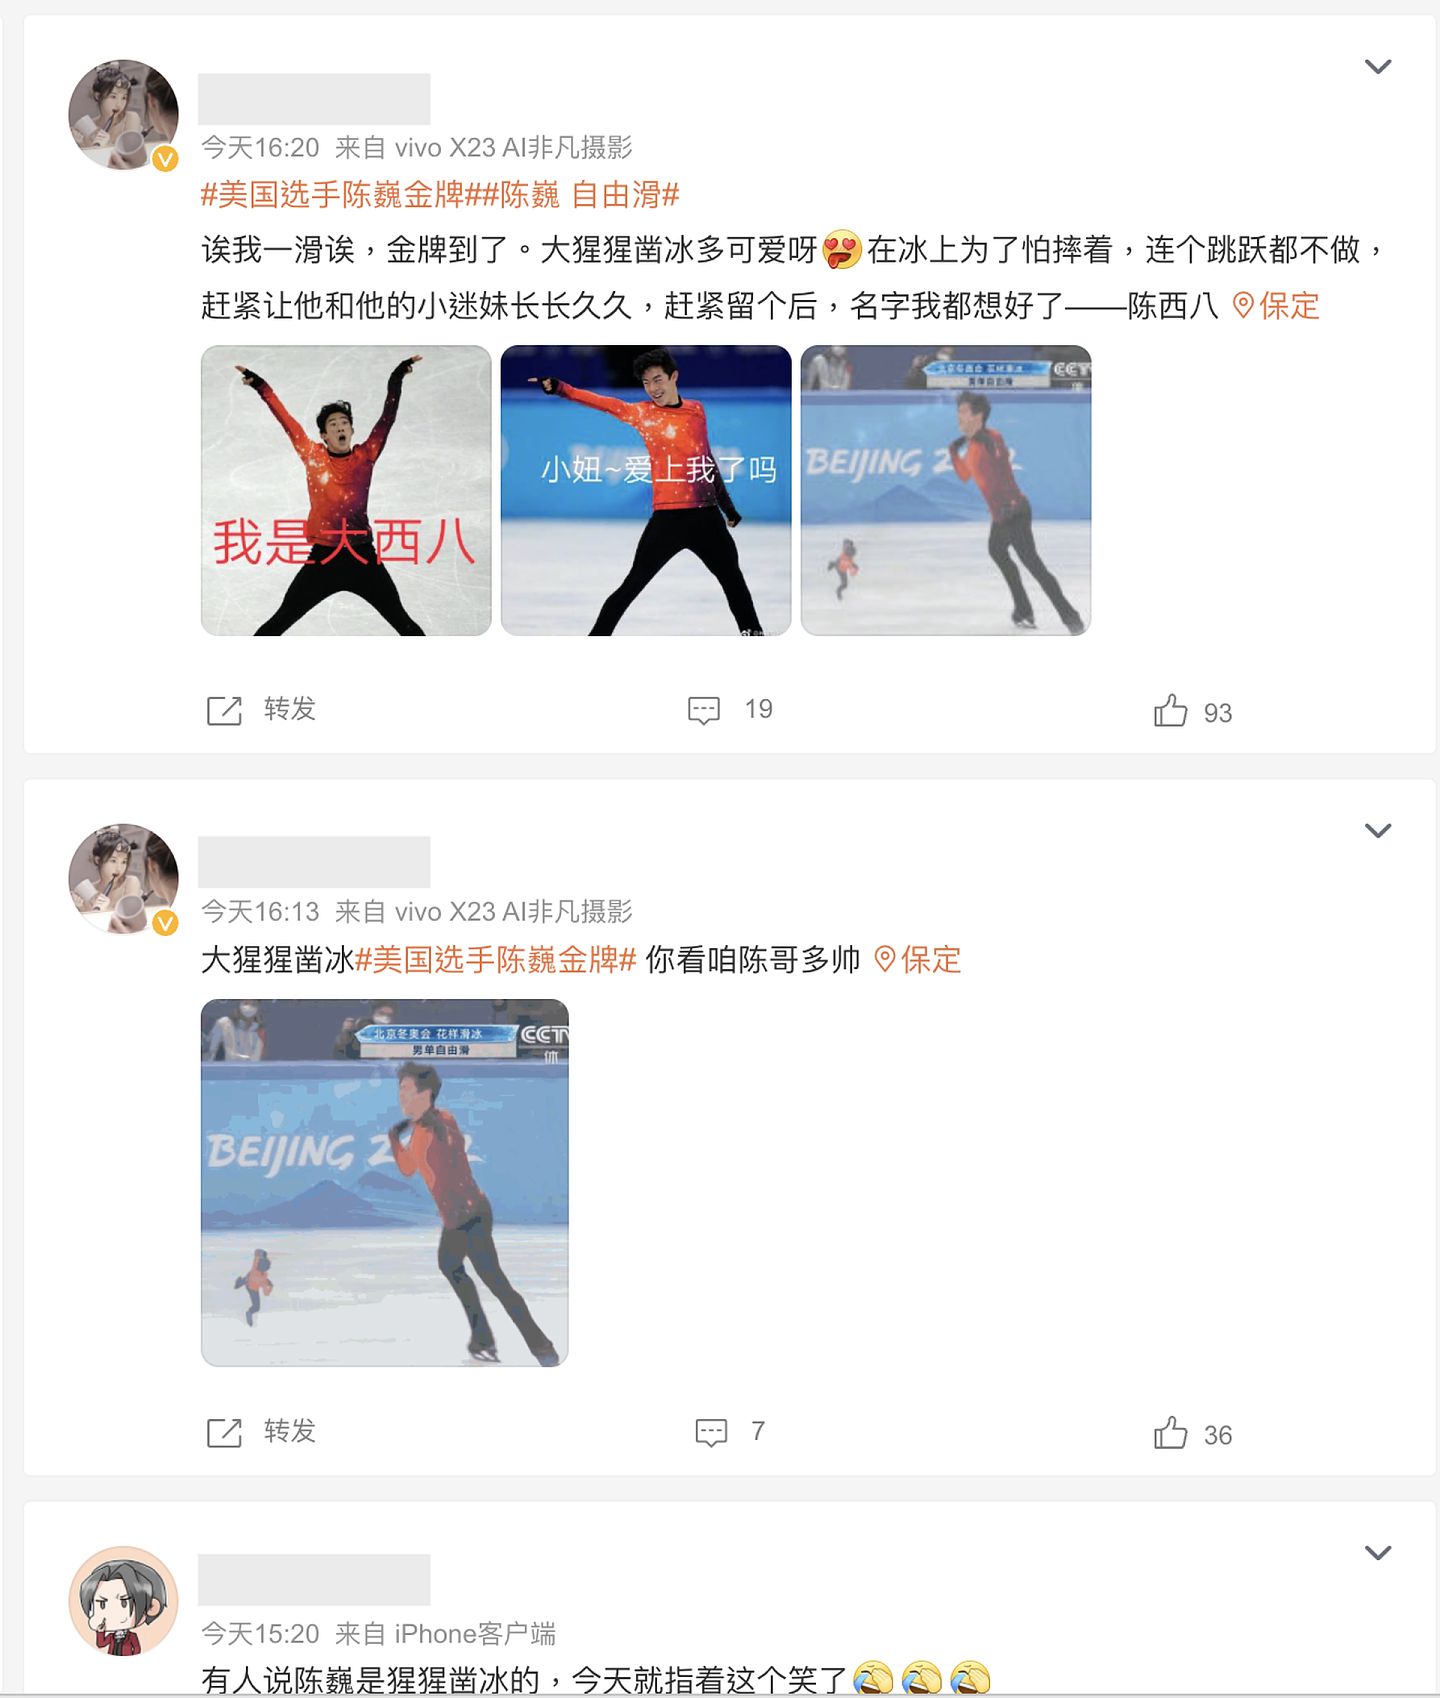 陈巍的比赛表现被部分中国网民讥讽是“猩猩凿冰”。（微博截图）